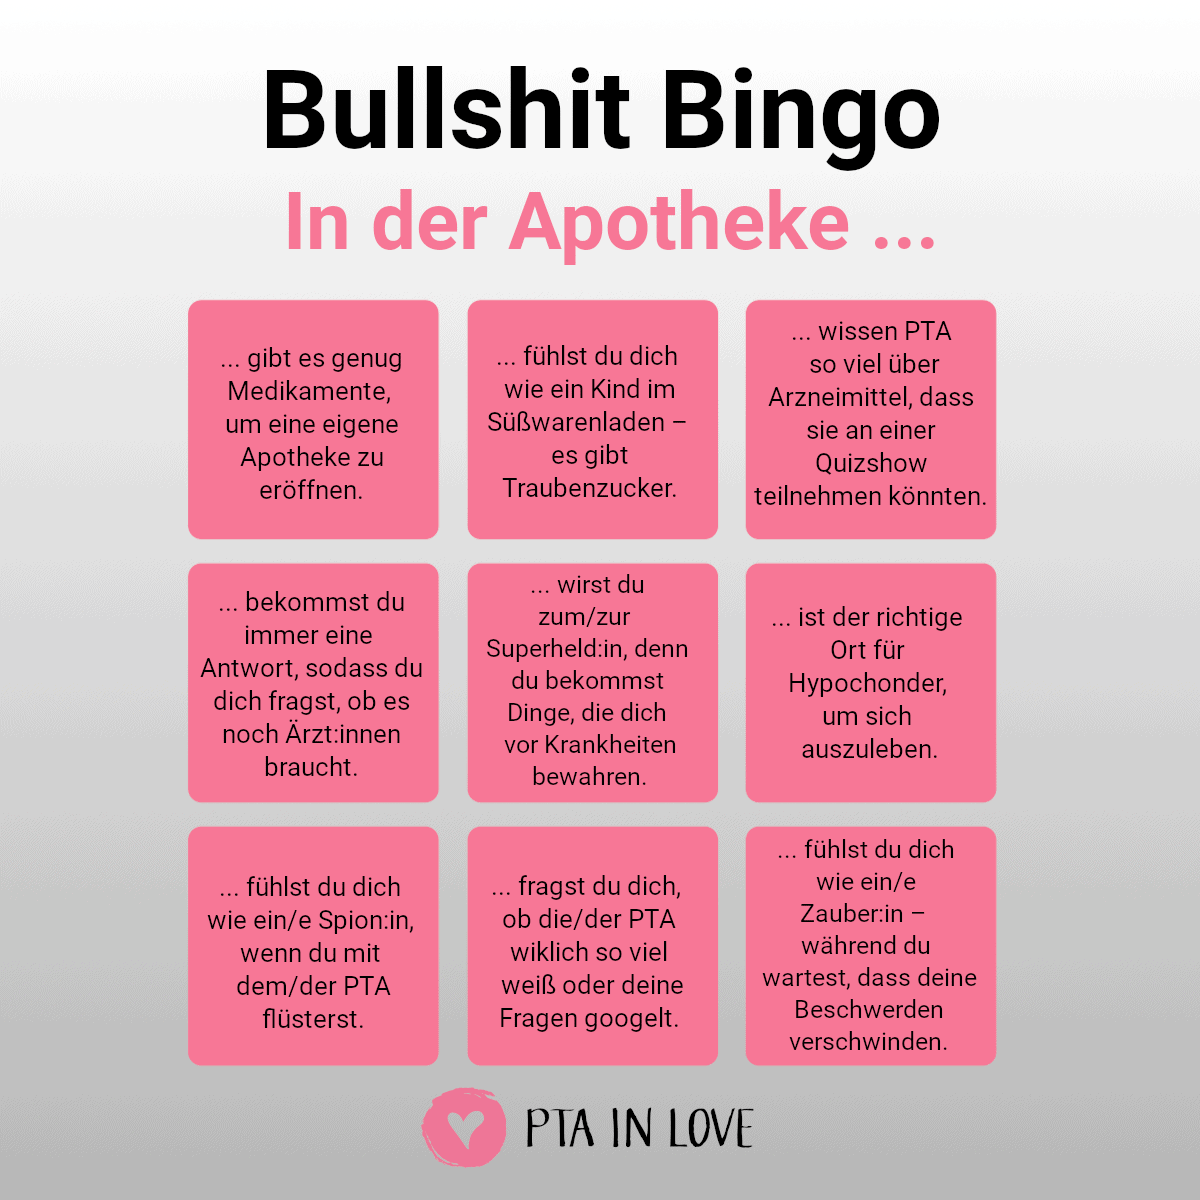 Bullshit-Bingo